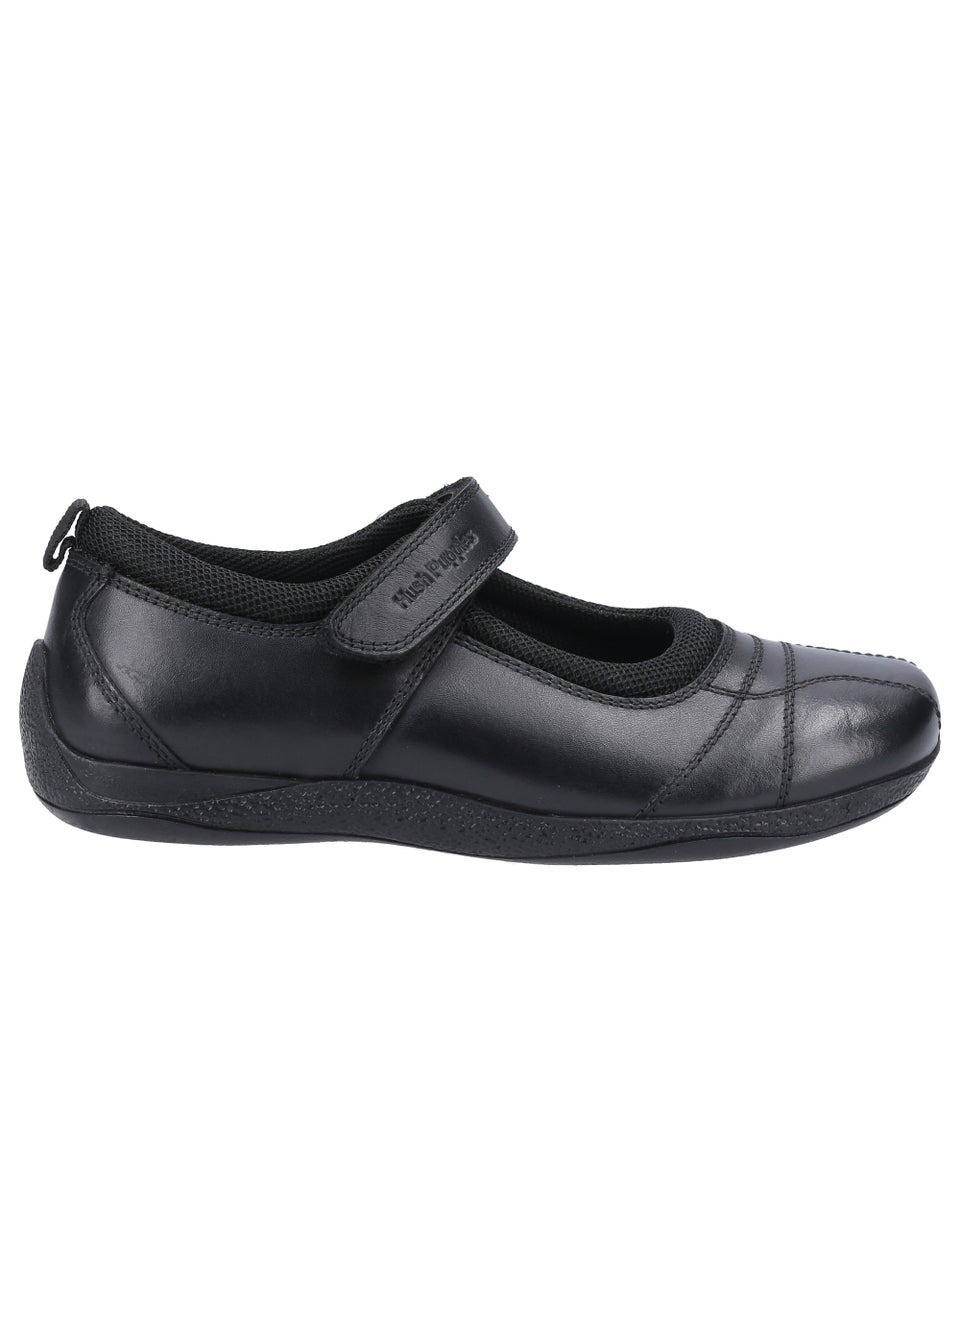 Черные школьные туфли для девочек Hush Puppies Junior (до 10 лет – от 2 лет) кроссовки hush puppies good grey